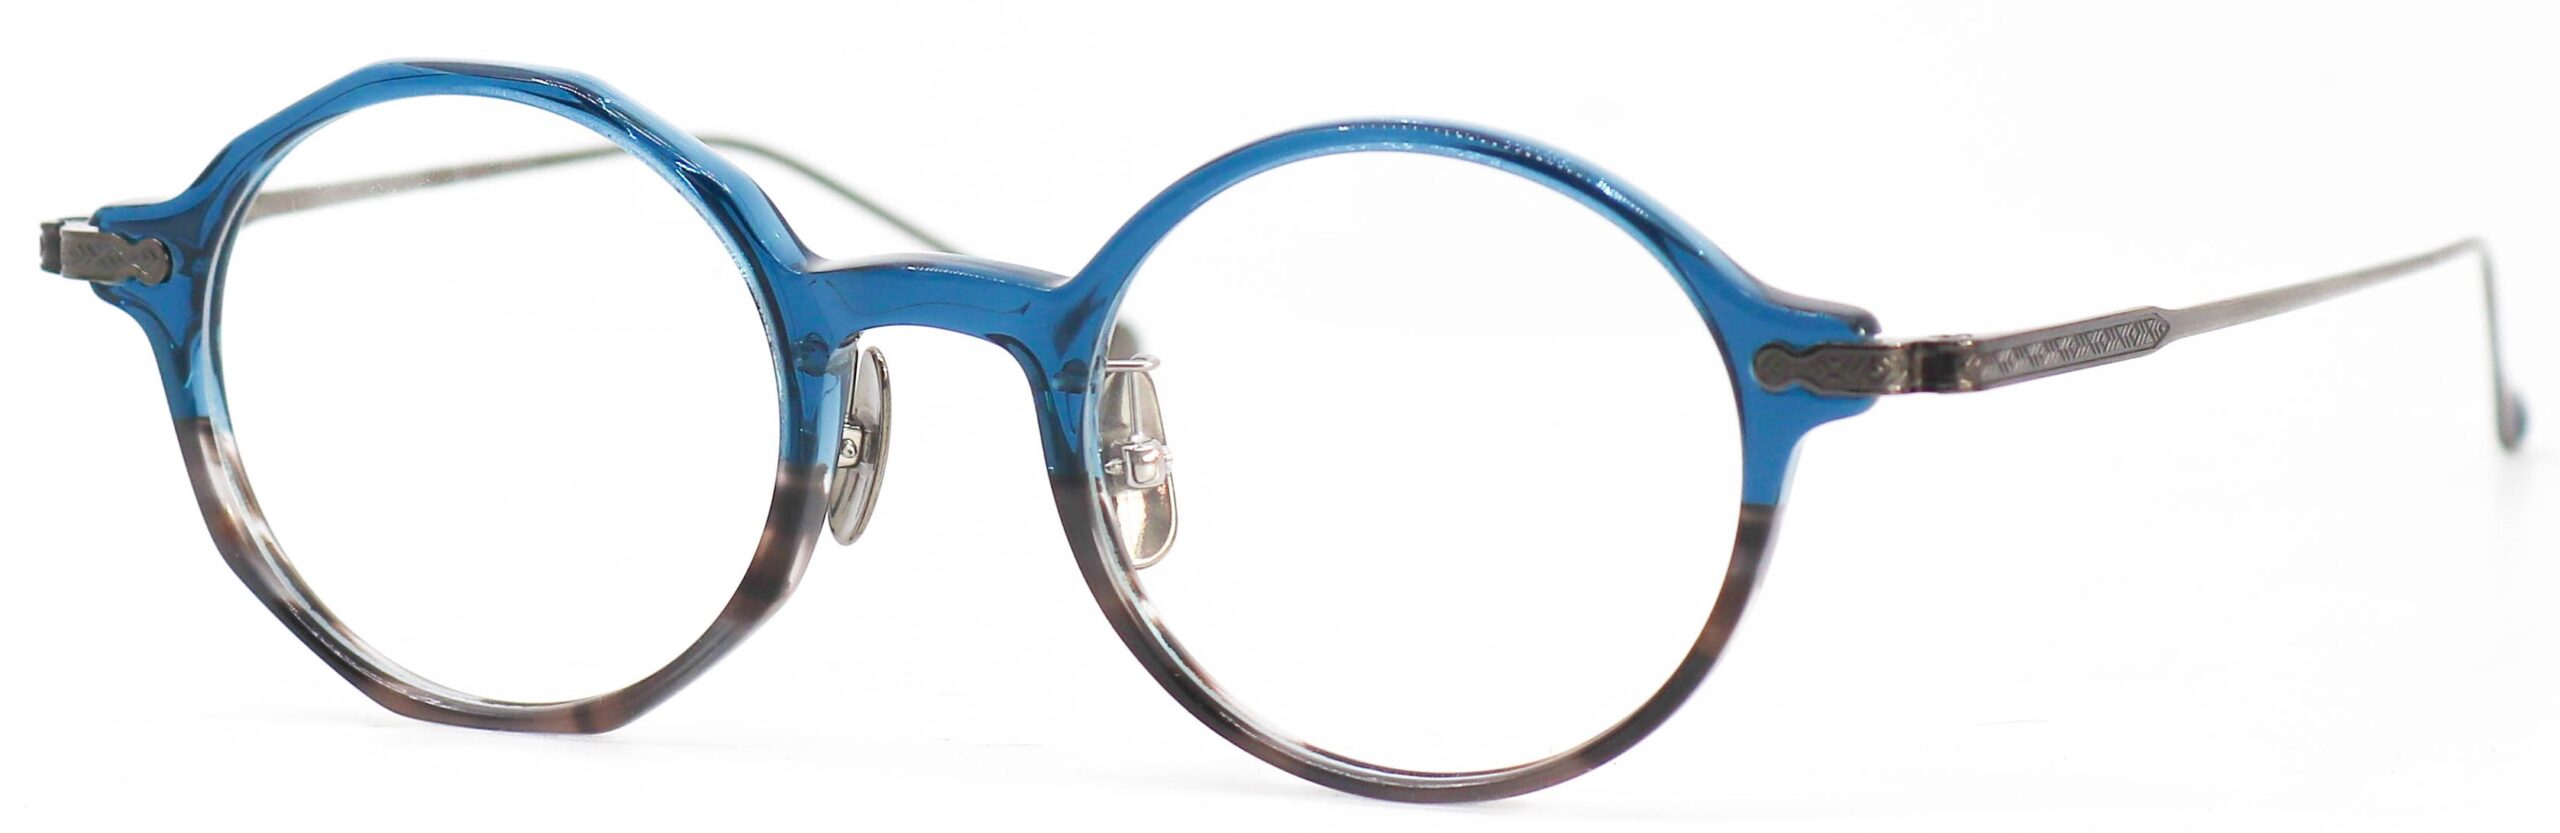 眼鏡のカラータイプC-6 Blue-GraySasa/At-Silver